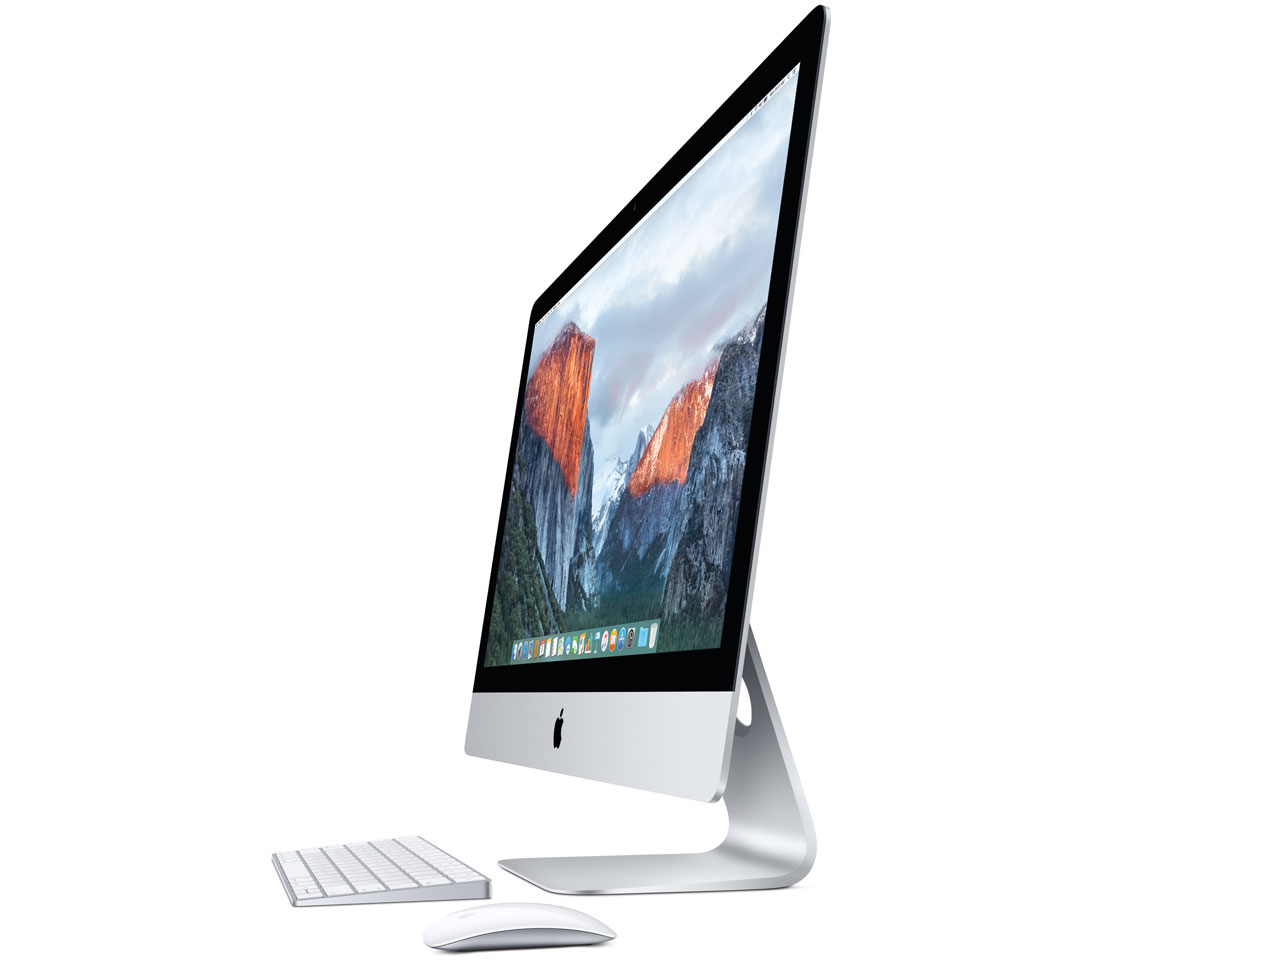 中古iMac Retina 5K intel Core i5 3.2GHz(4コア) 27インチ Silver OS10.11 起動モデル (2015/10)MK462J/A